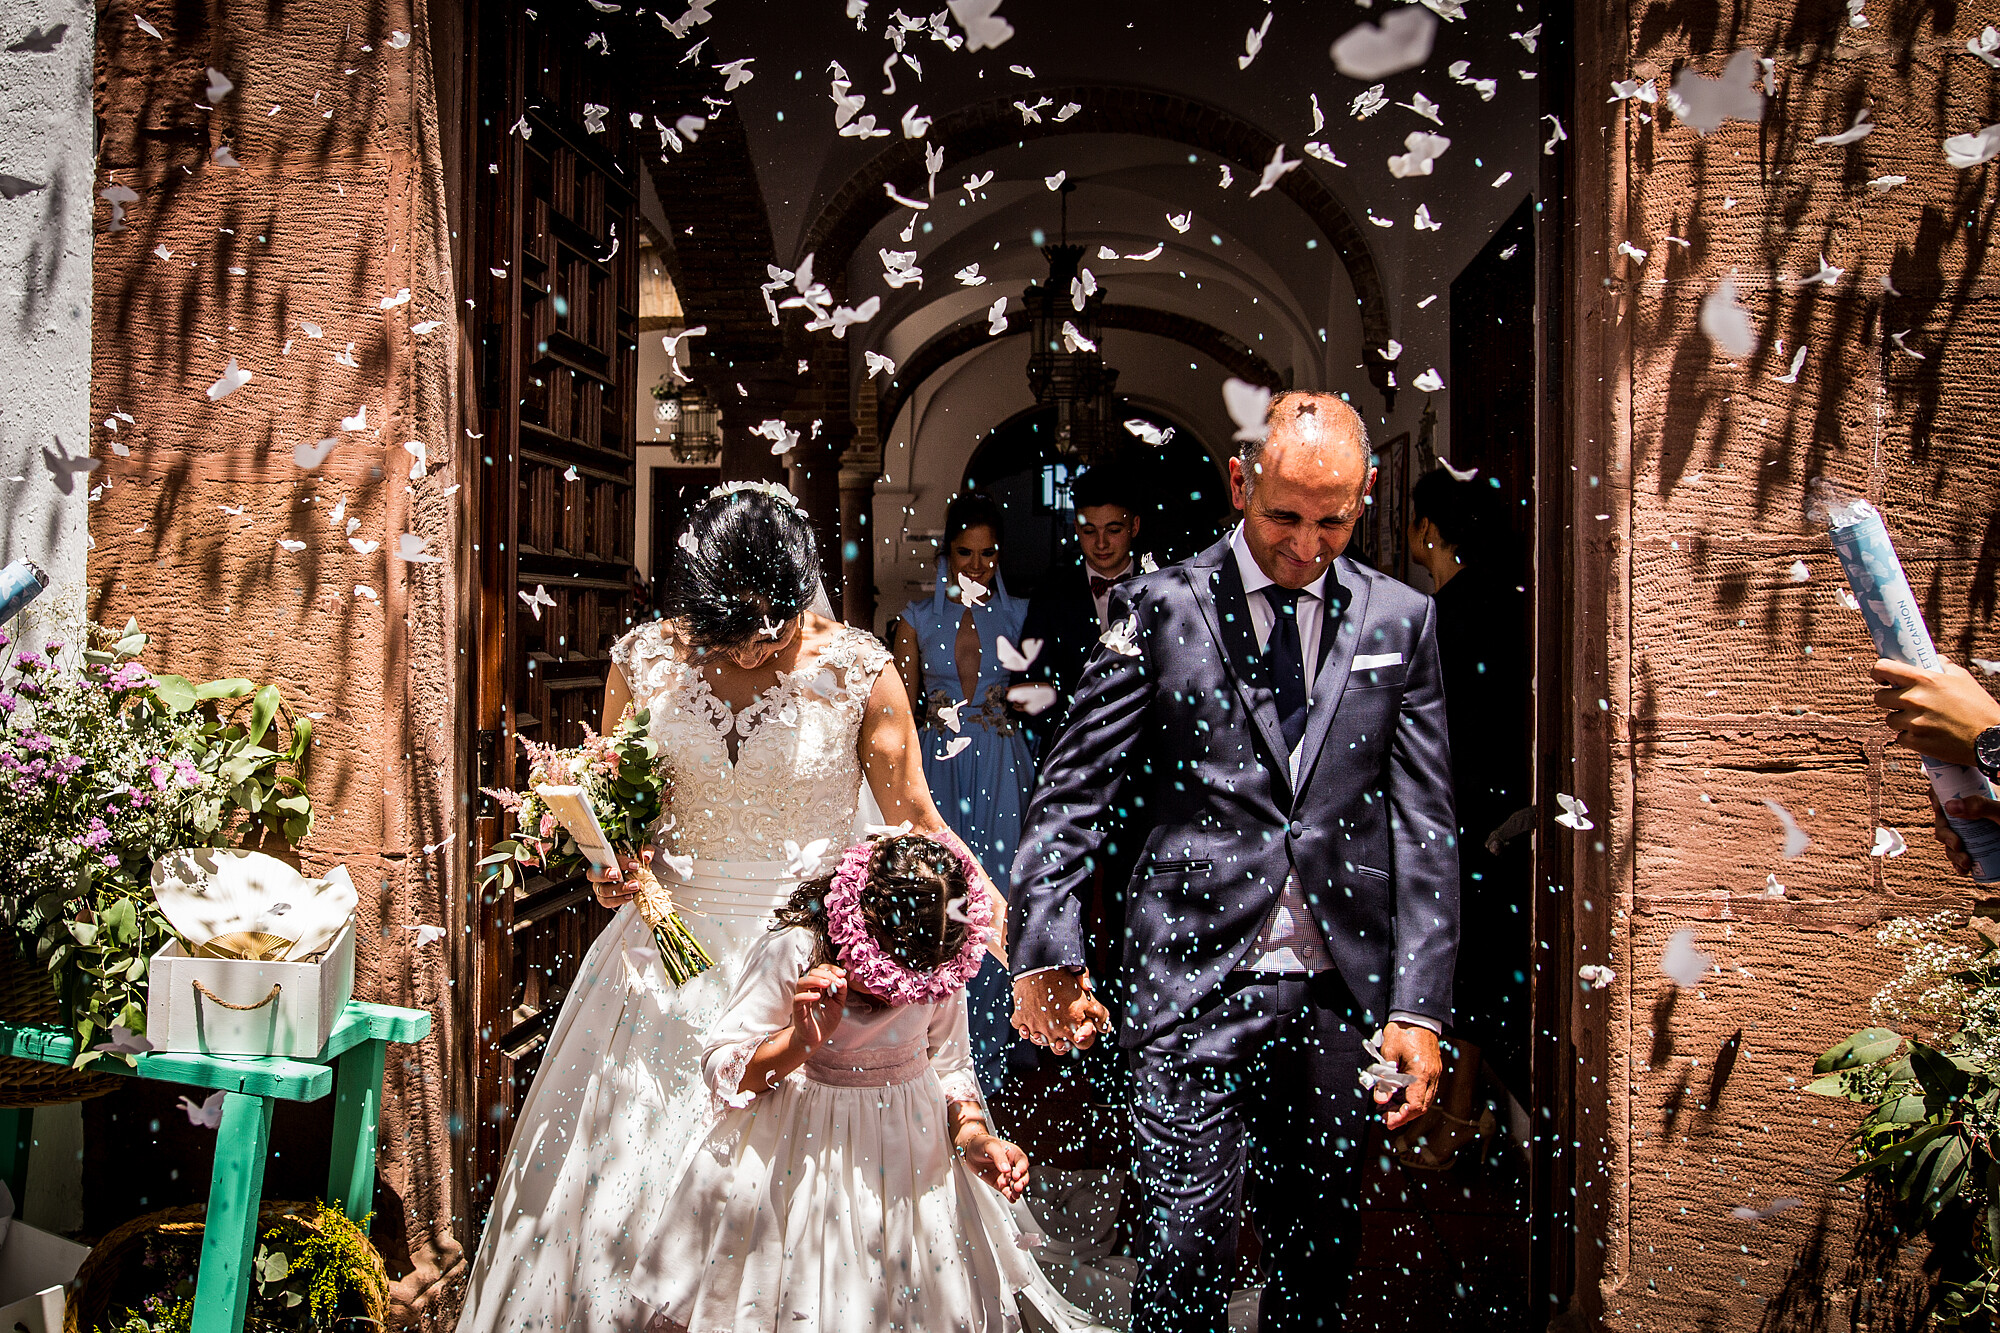 Albuera Morales Fotografía - Fotógrafo de bodas en Montoro - Fotógrafo de bodas en Córdoba y provincia - maria-del-mar-y-alfonso-1188.jpg